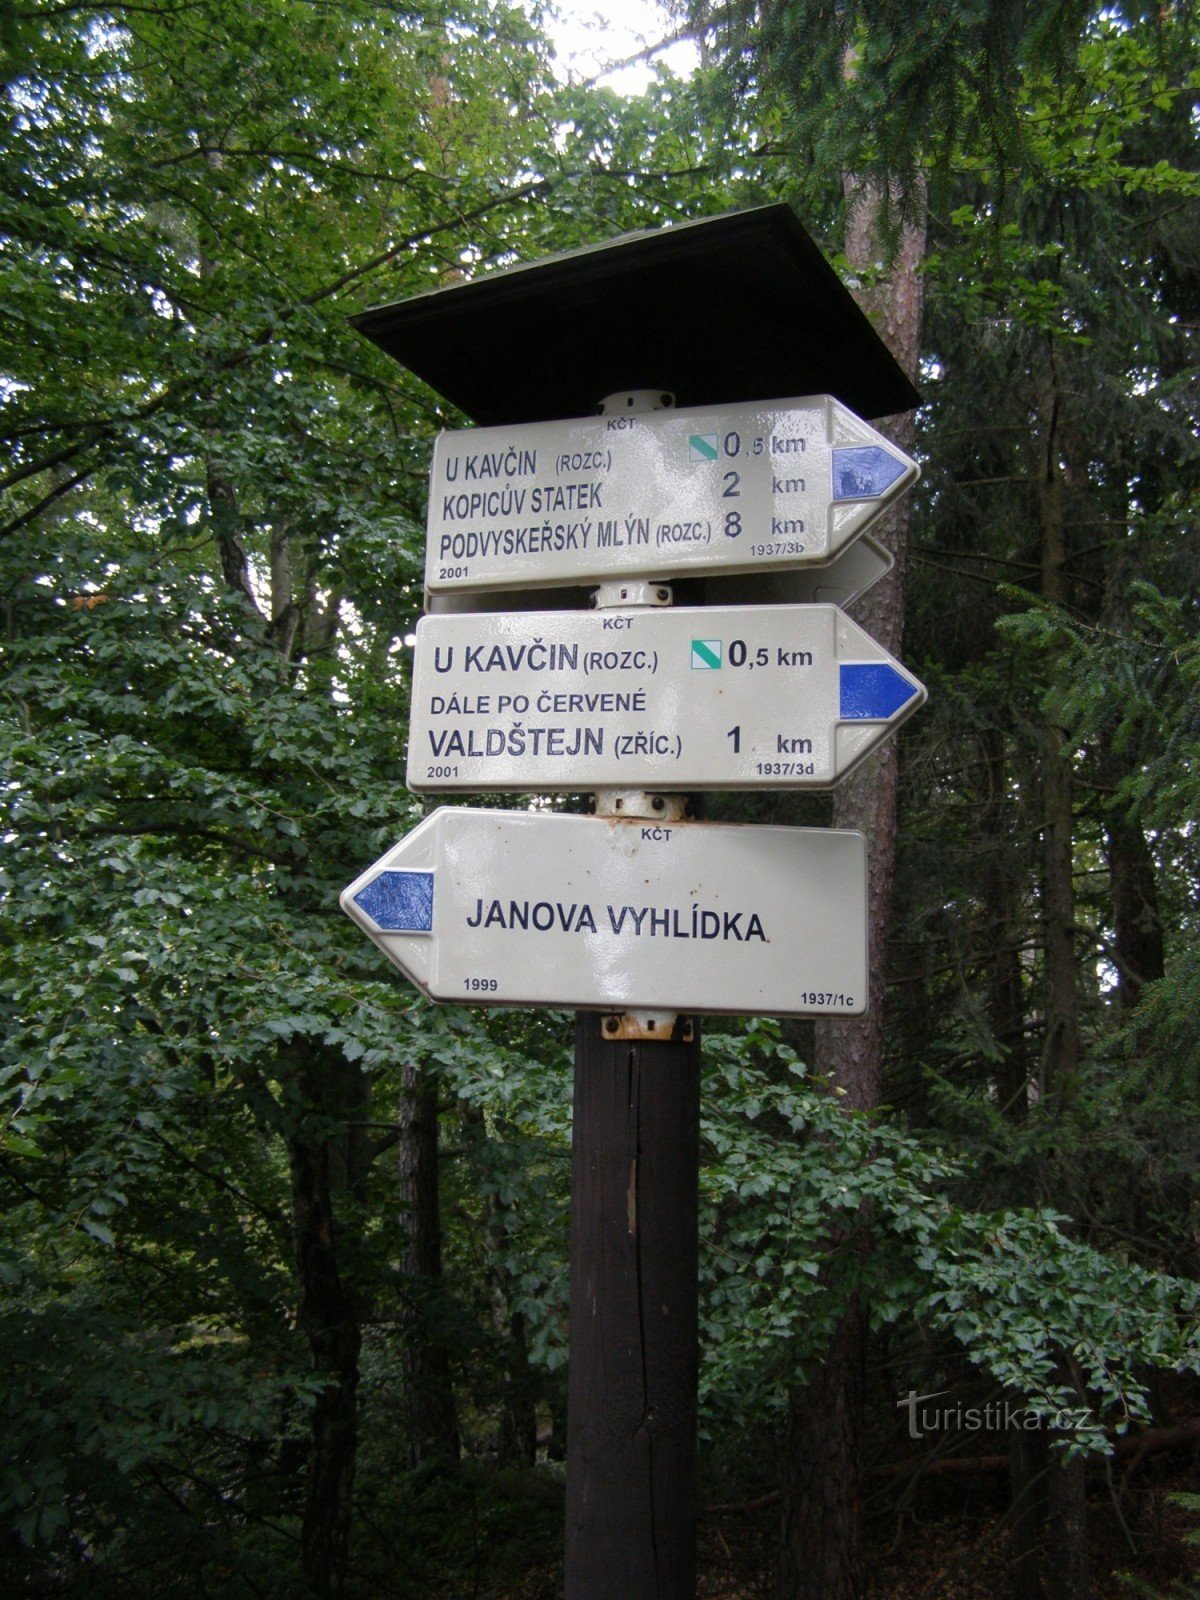 encrucijada turística en el mirador de Janova